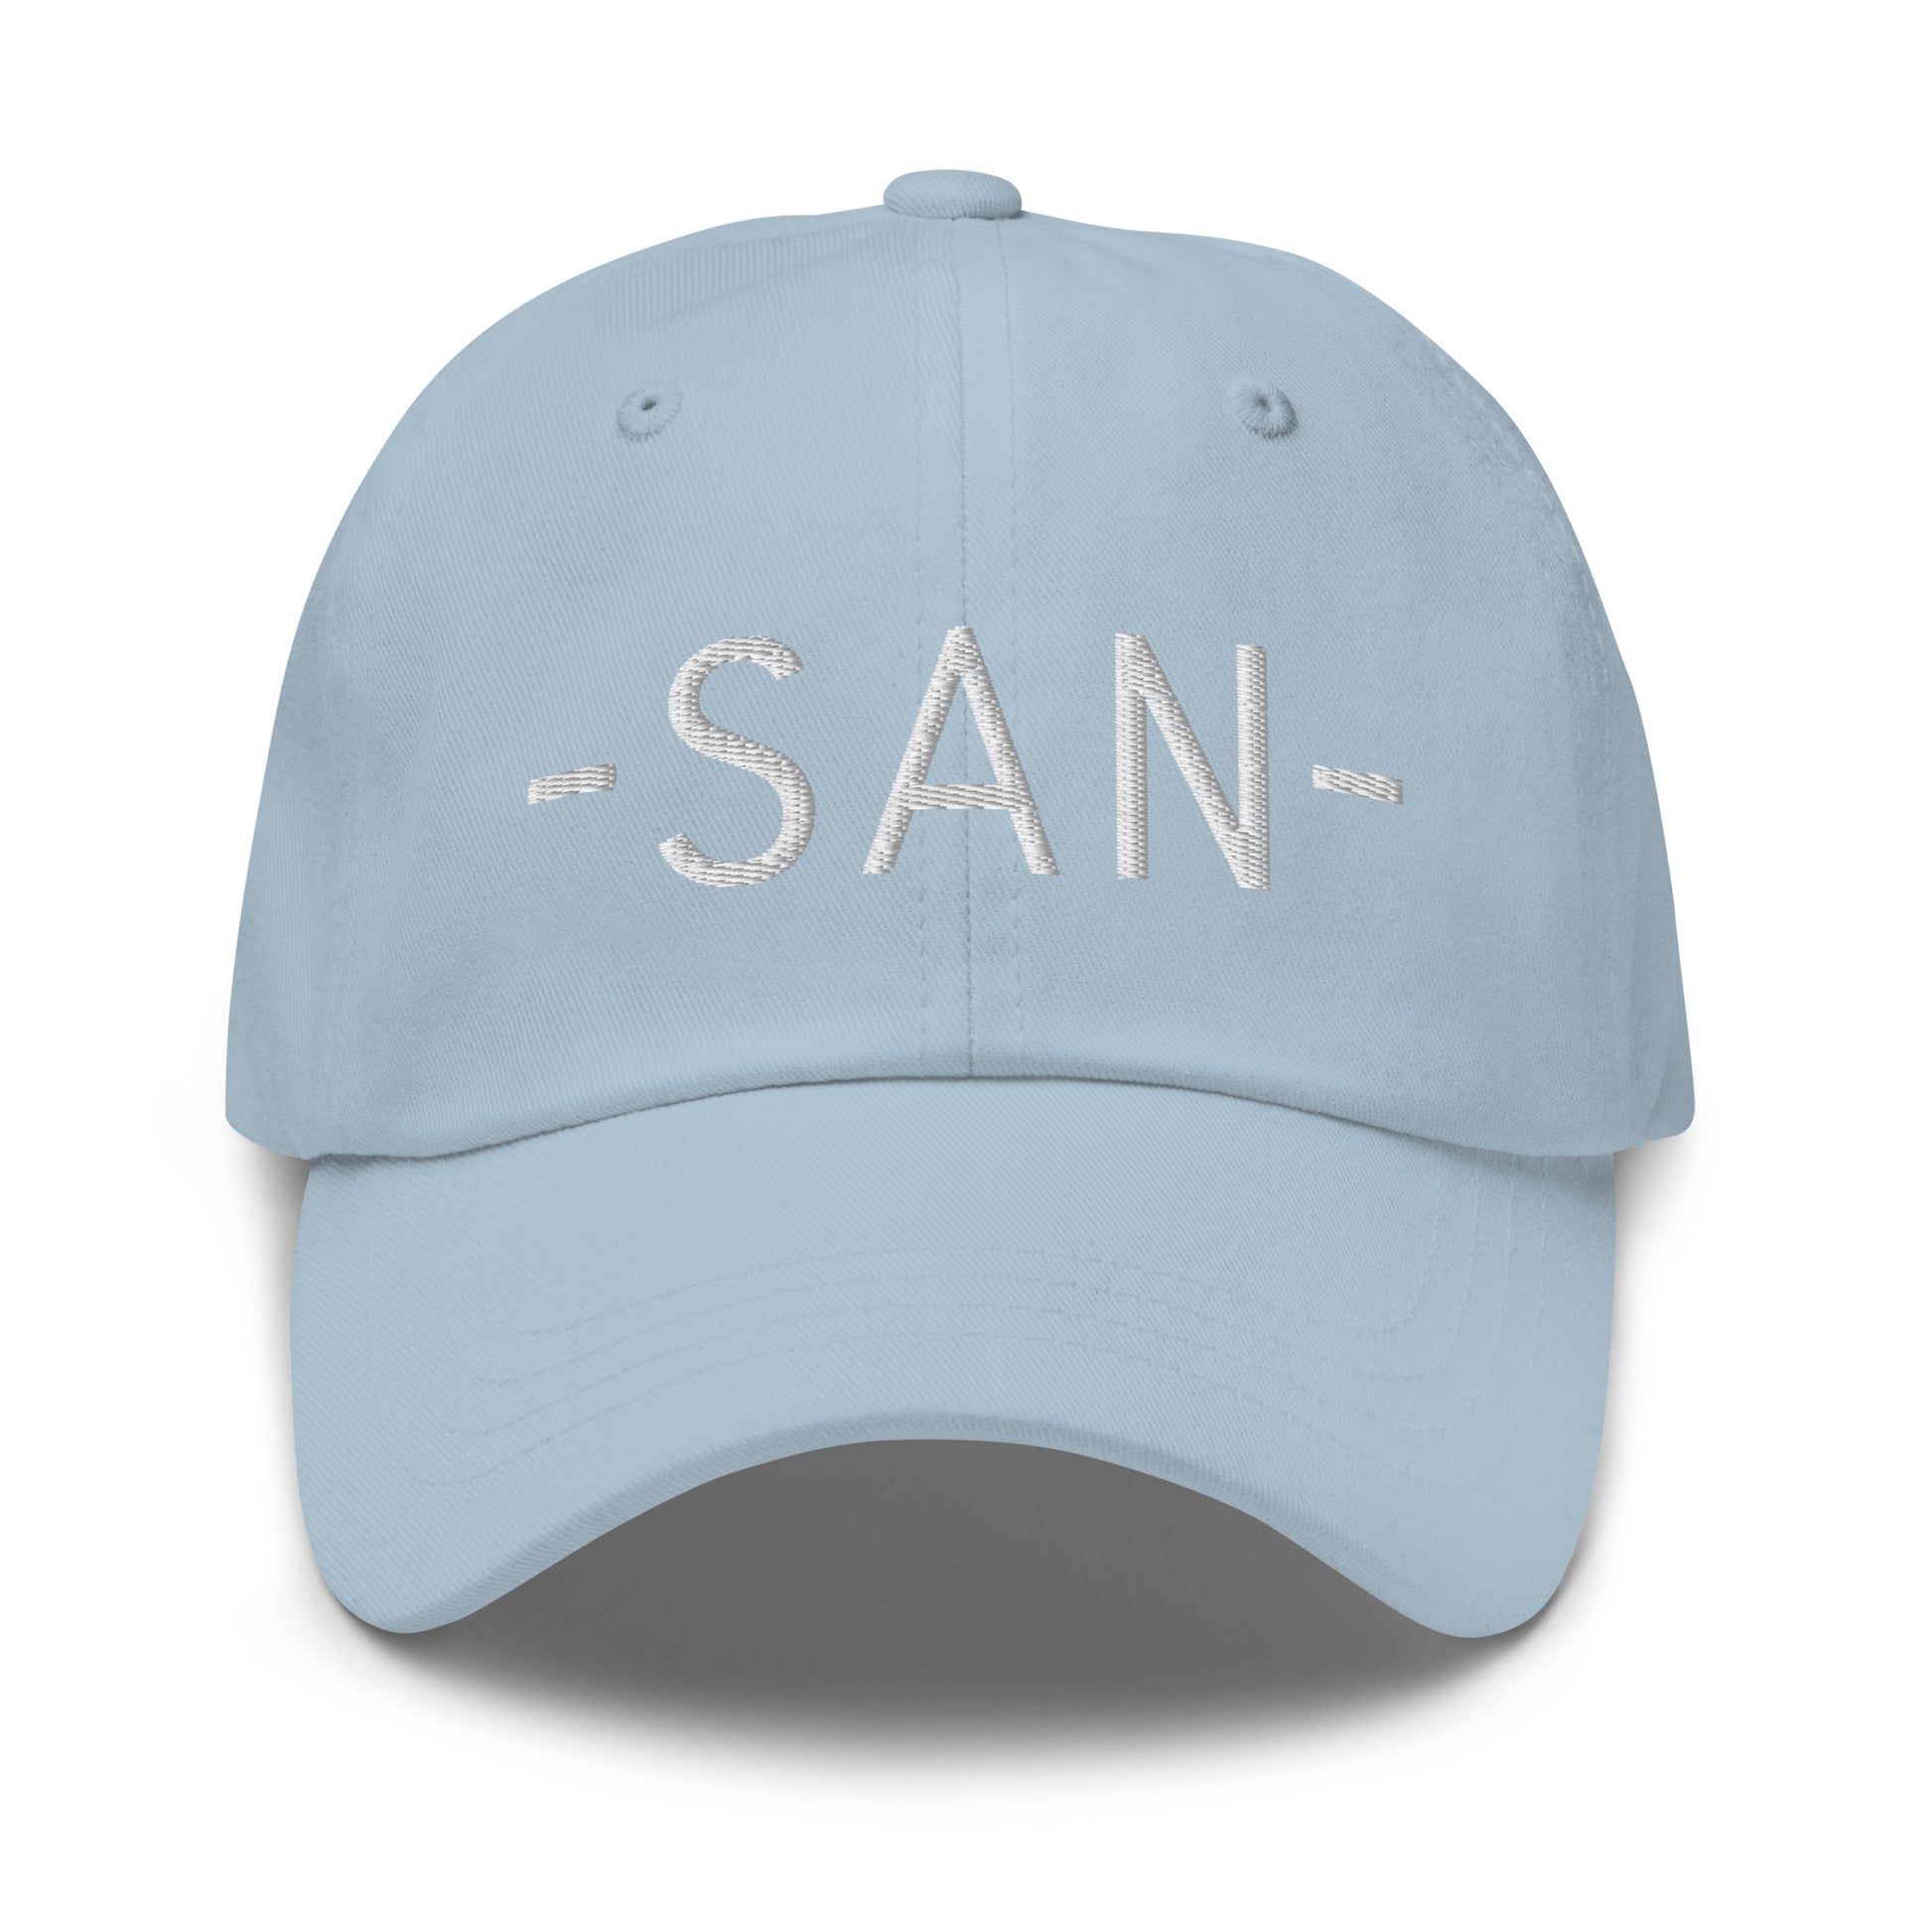 Souvenir Baseball Cap - White • SAN San Diego • YHM Designs - Image 27